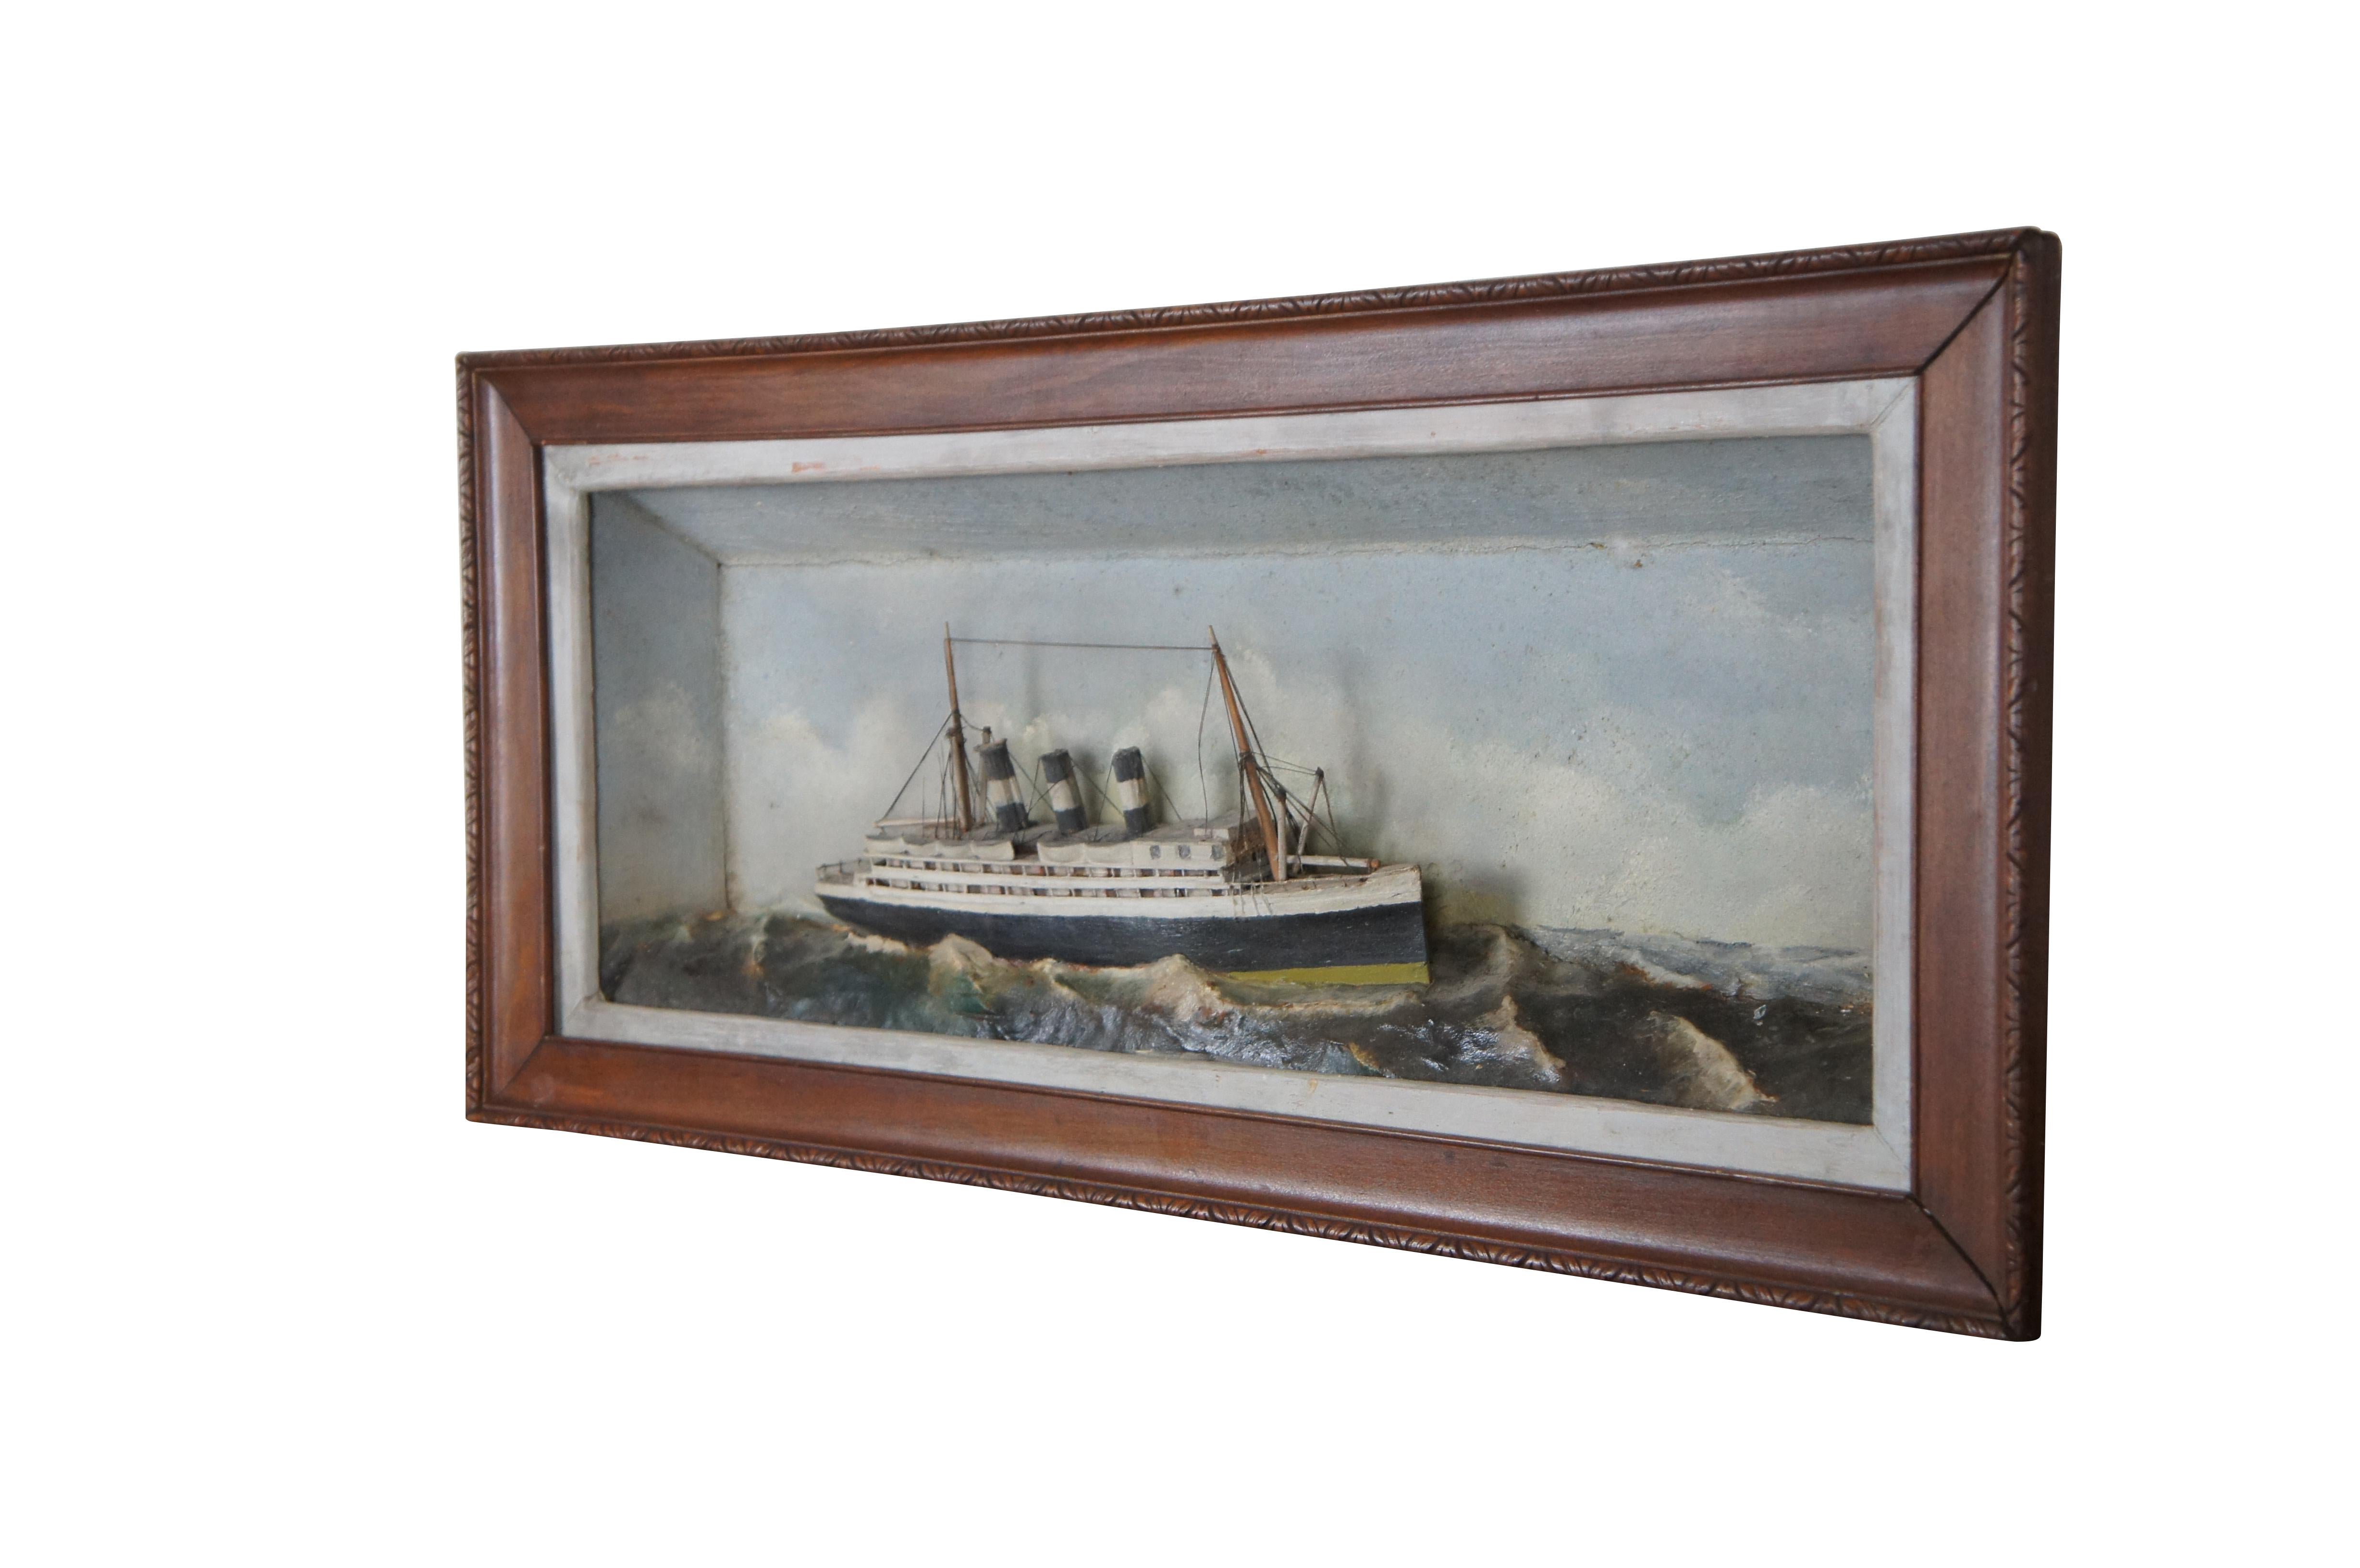 Antique Nautical Maritime Ship Ocean Liner Steamship Shadowbox Diorama 27